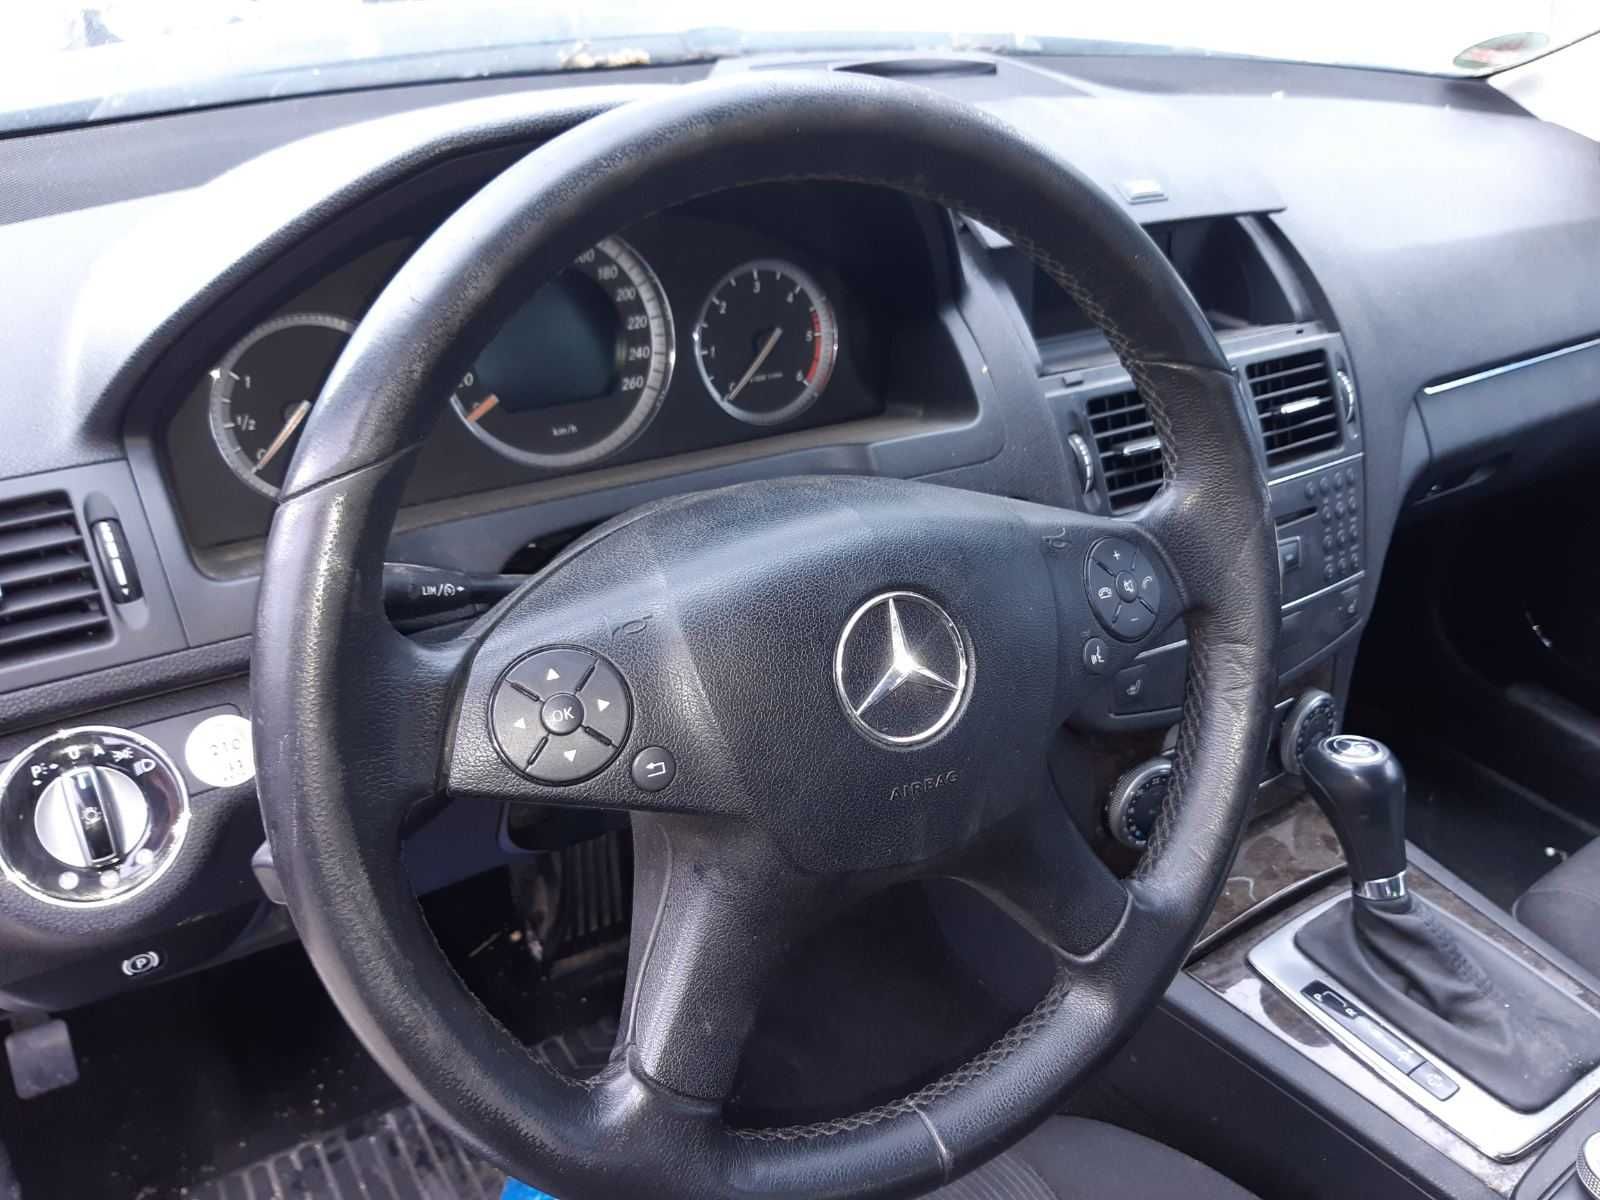 Mercedes C220, cdi, 2008 г НА ЧАСТИ